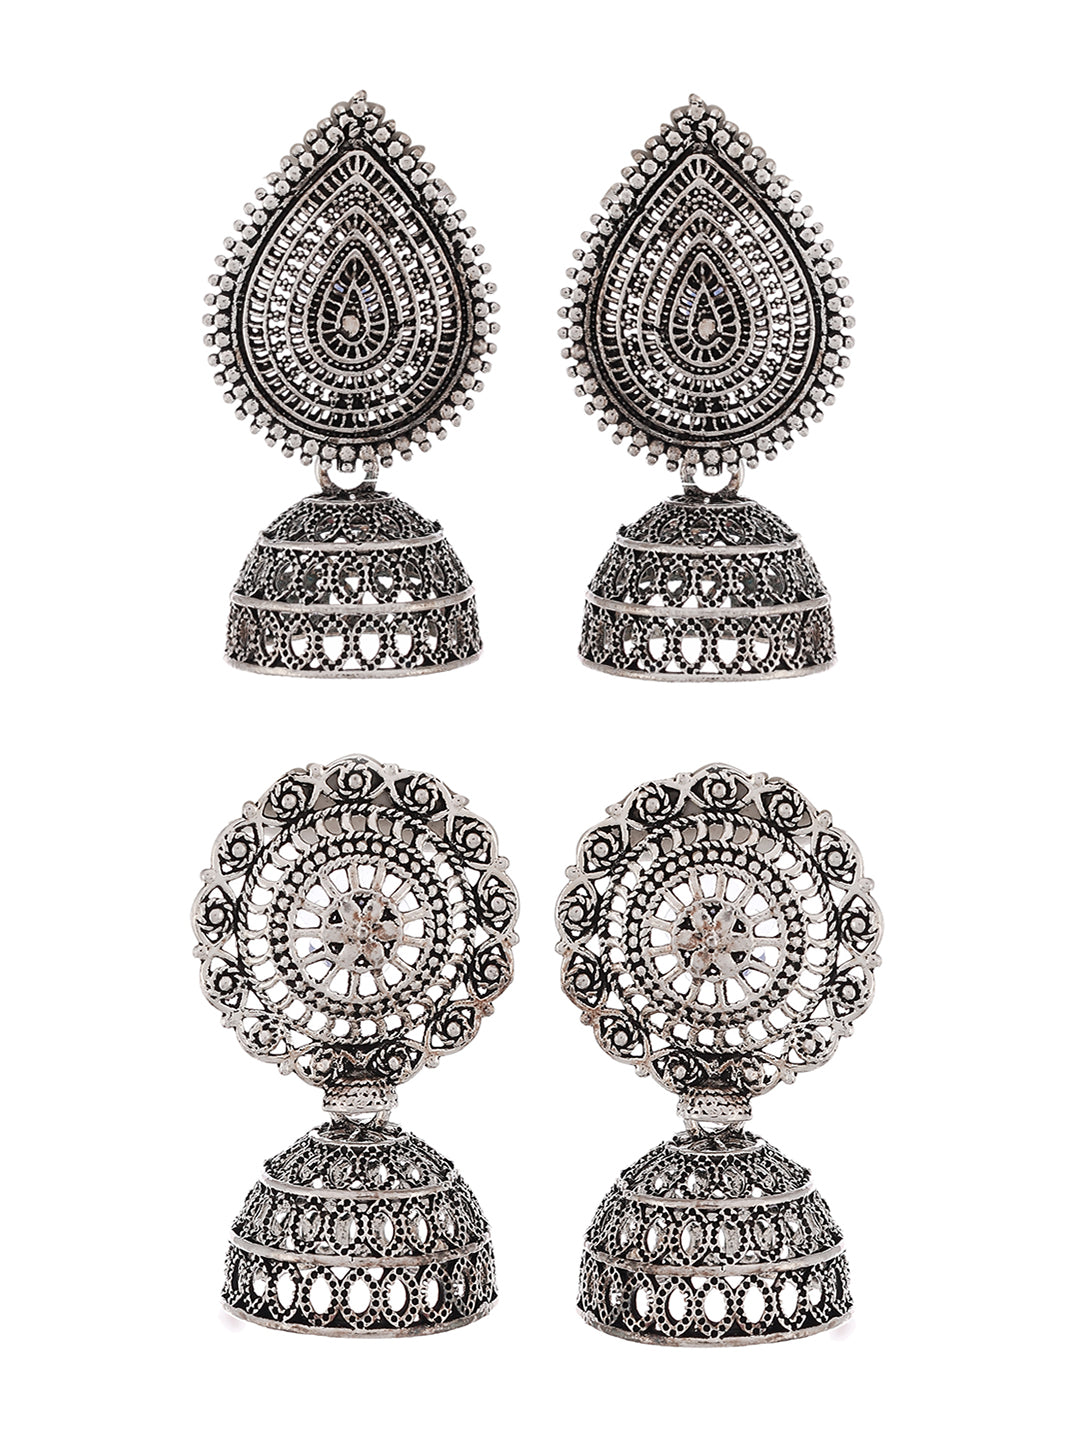 Designer Stylish Black Jhumki Earrings for women or Girls | gintaa.com